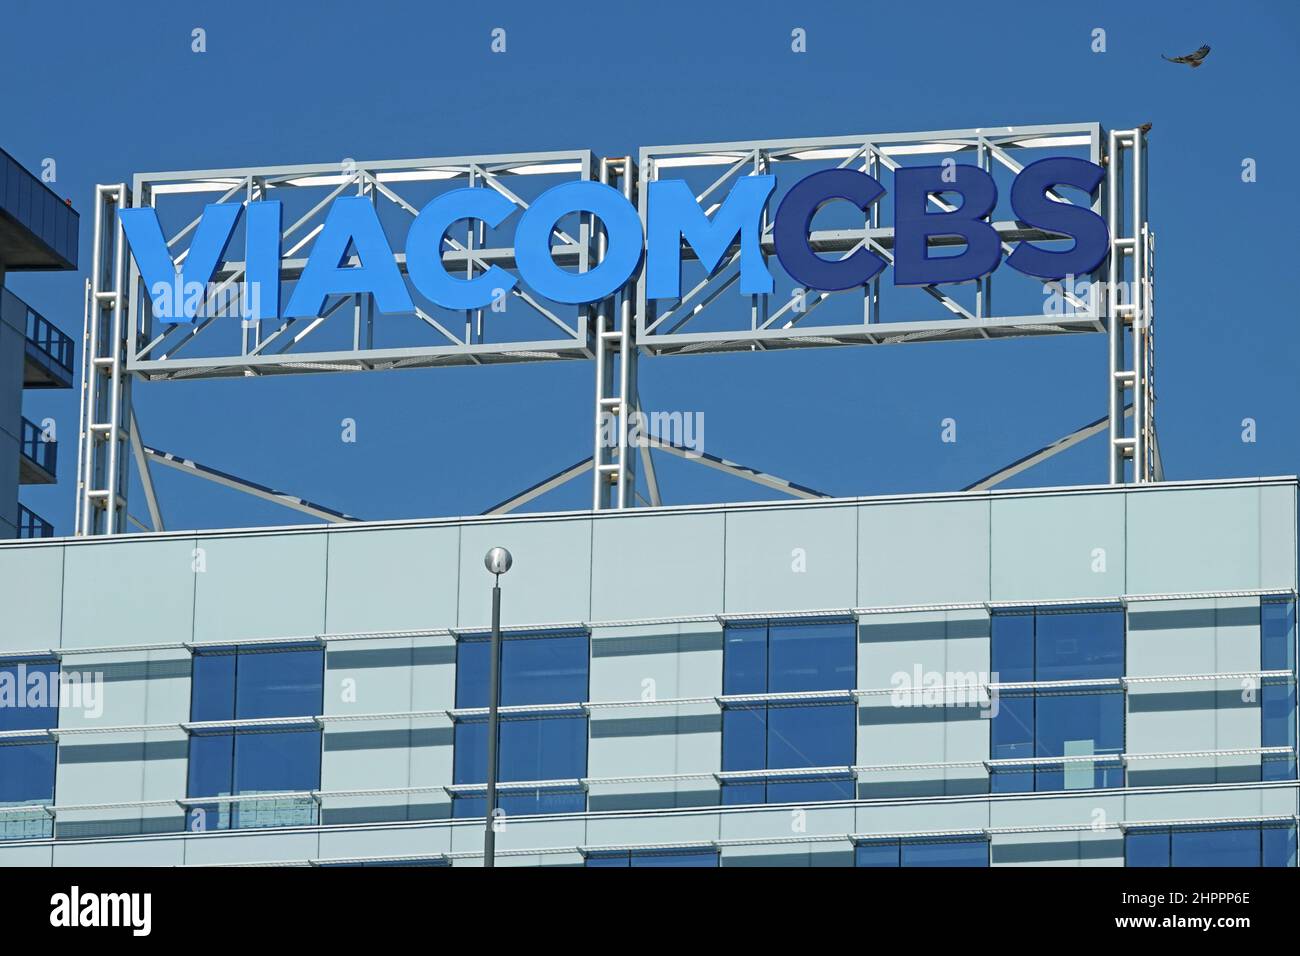 Los Angeles, CA / USA - 18. Februar 2022: Auf einem Gebäude am CBS Columbia Square in Hollywood ist ein VIACOMCBS-Logo zu sehen. Stockfoto